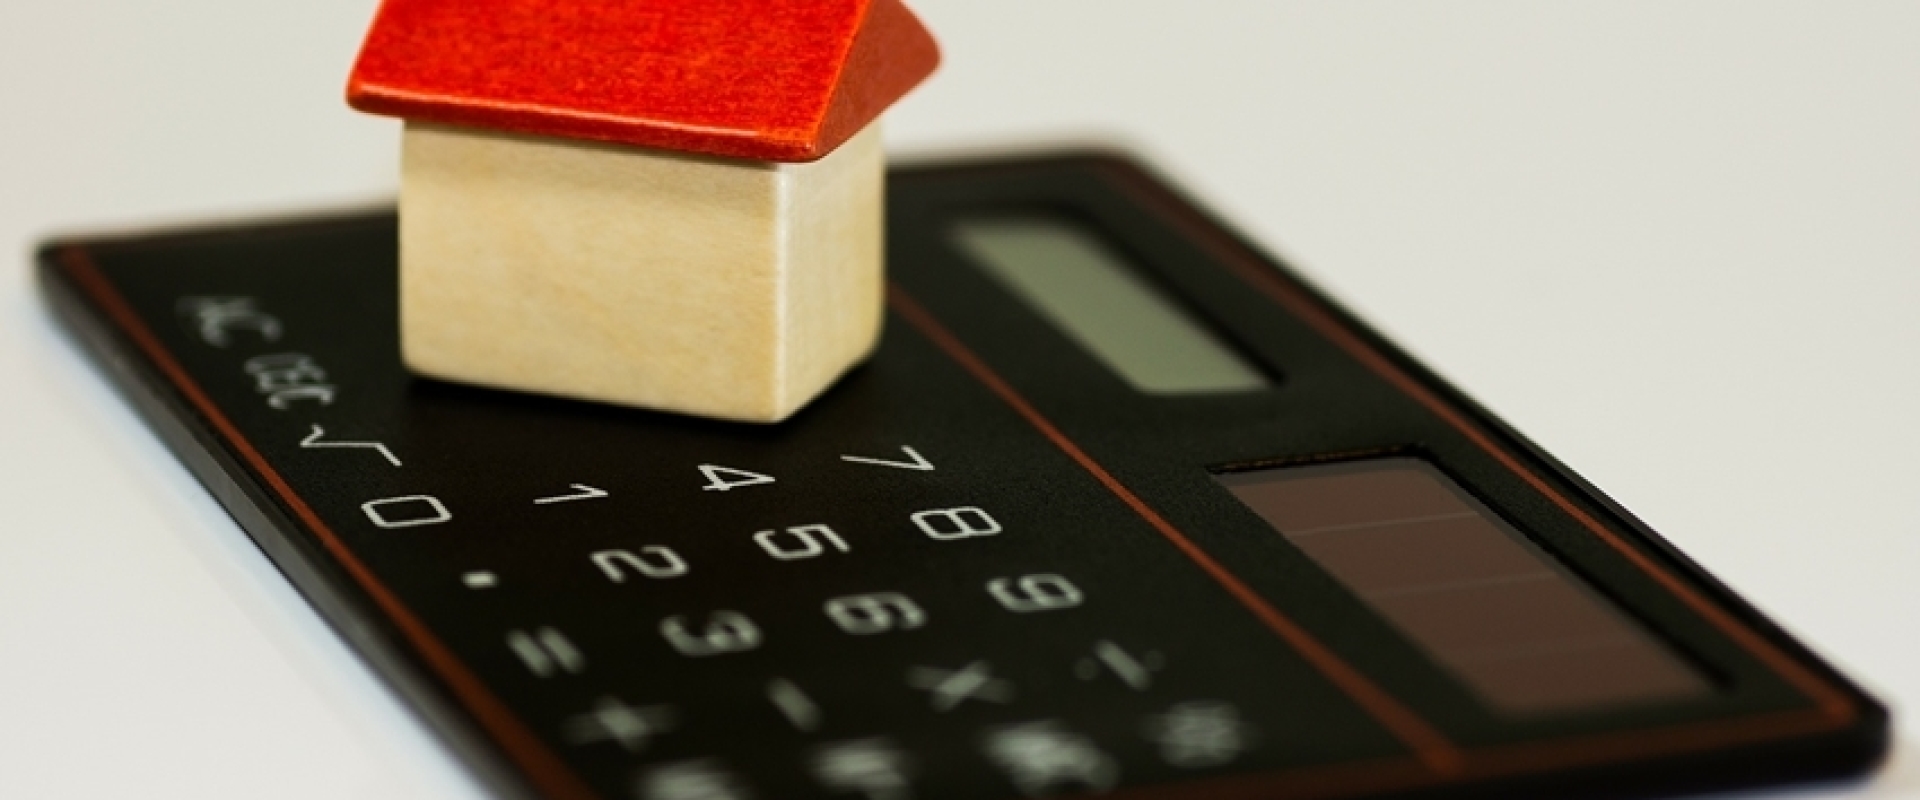 Goedkope hypotheekadviseur: wat zijn de risico's?en nadelen?